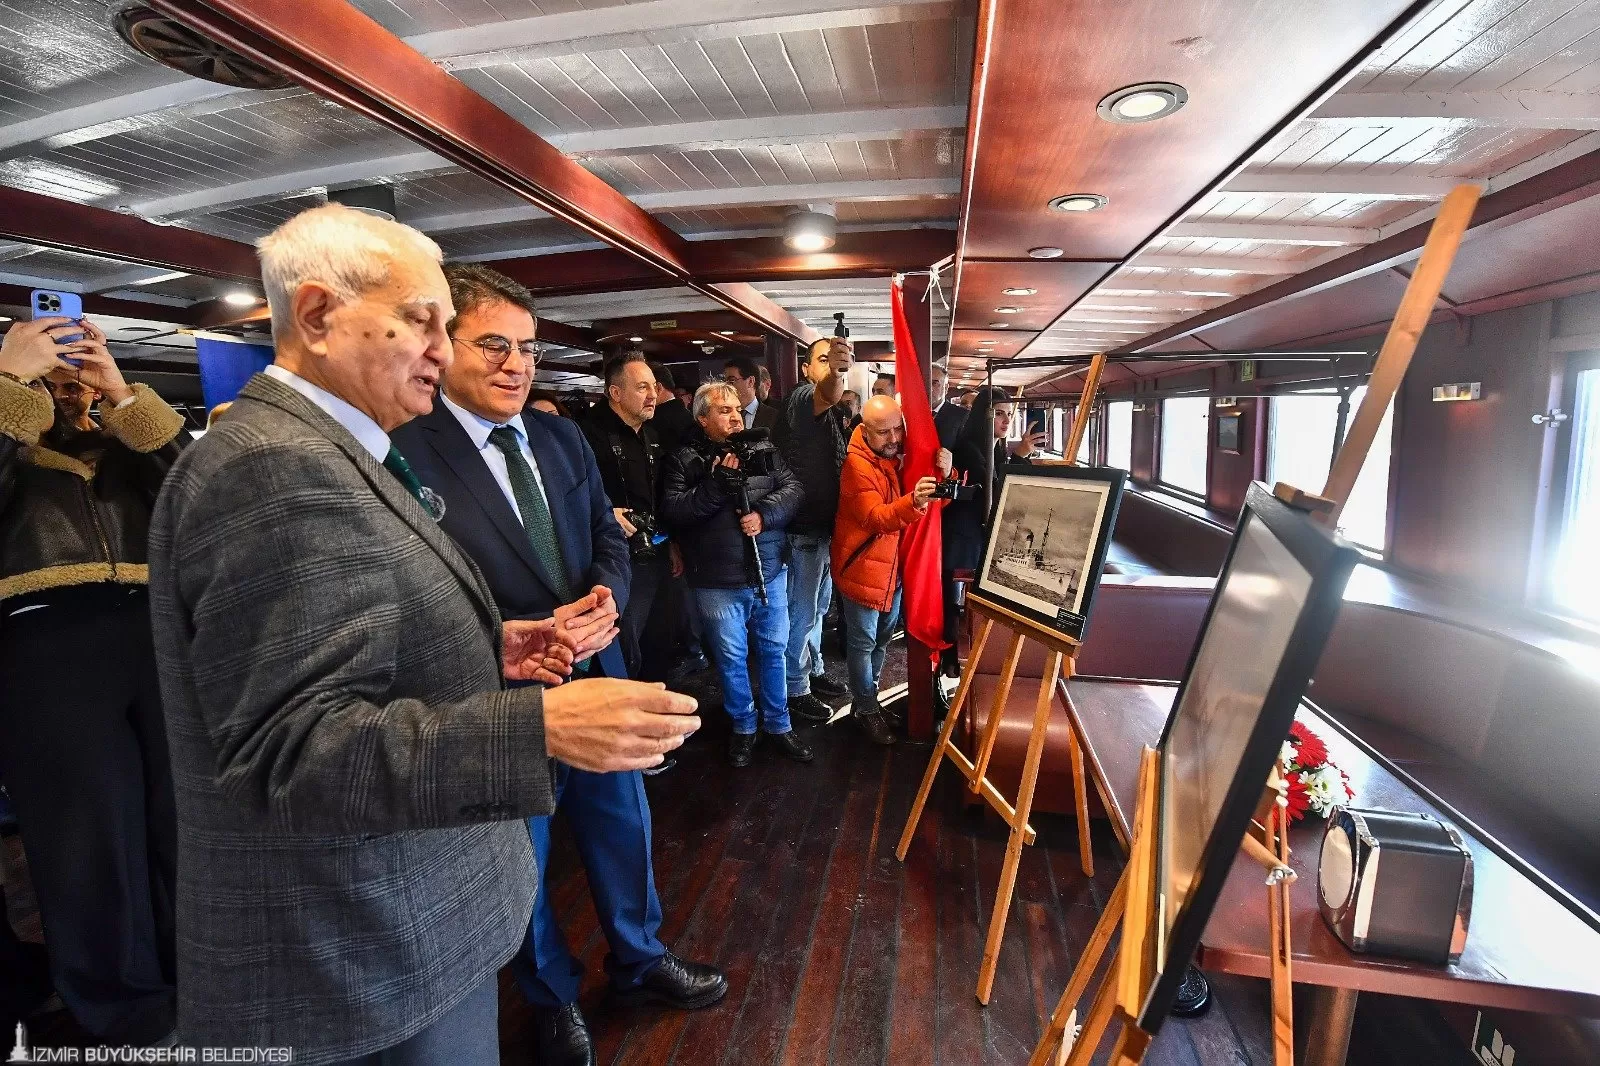 Büyük Önder Mustafa Kemal Atatürk'ün denizciliğe verdiği önemi anlatan "100 Yıllık Deniz Yolculuğu: Atatürk ve Cumhuriyet Gemileri Fotoğraf Sergisi" İzmir'de deniz severlerle buluştu.